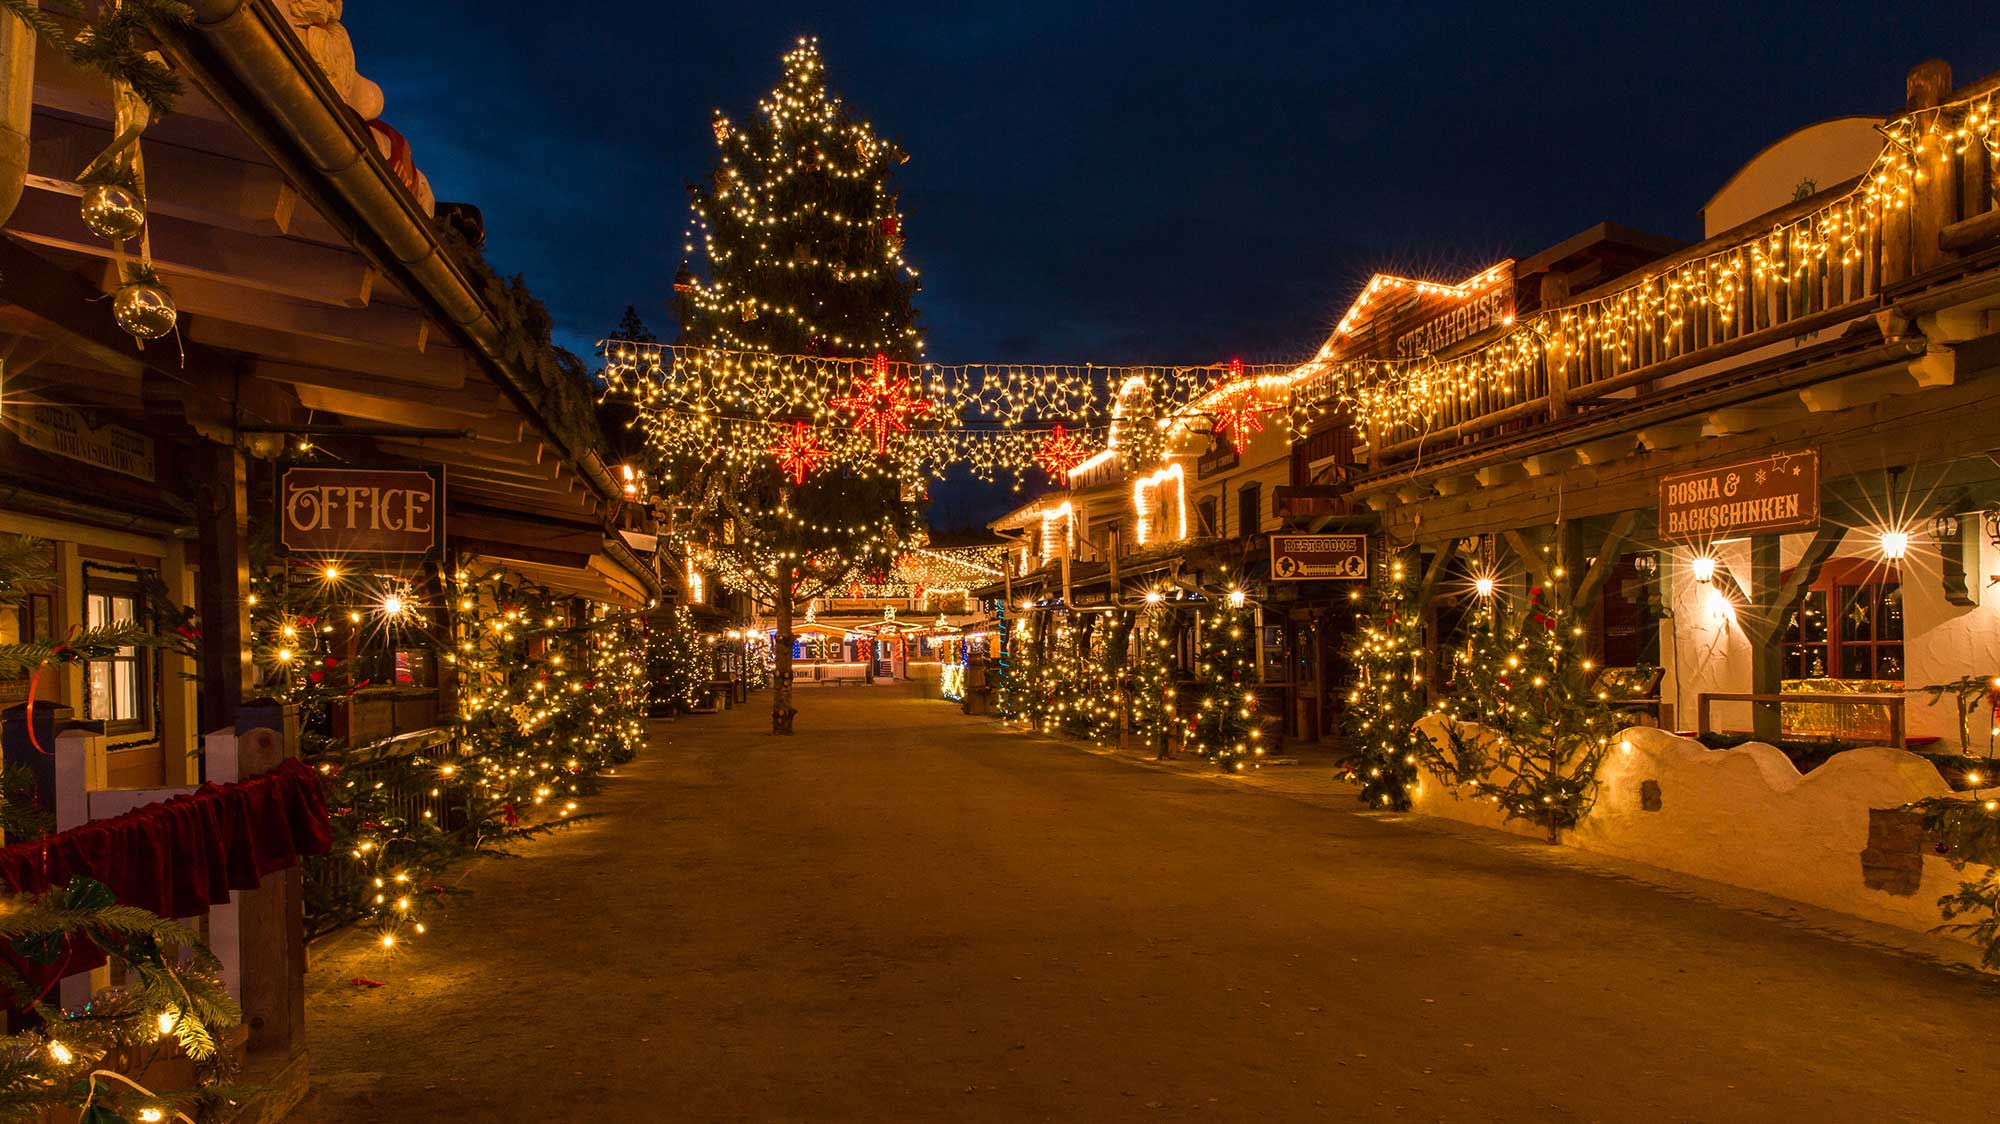 Einzigartiges Flair: tausende funkelnder Lichter lassen die Westernstadt zum
Deutsch-Amerikanischen Weihnachtsmarkt funkeln und glänzen.